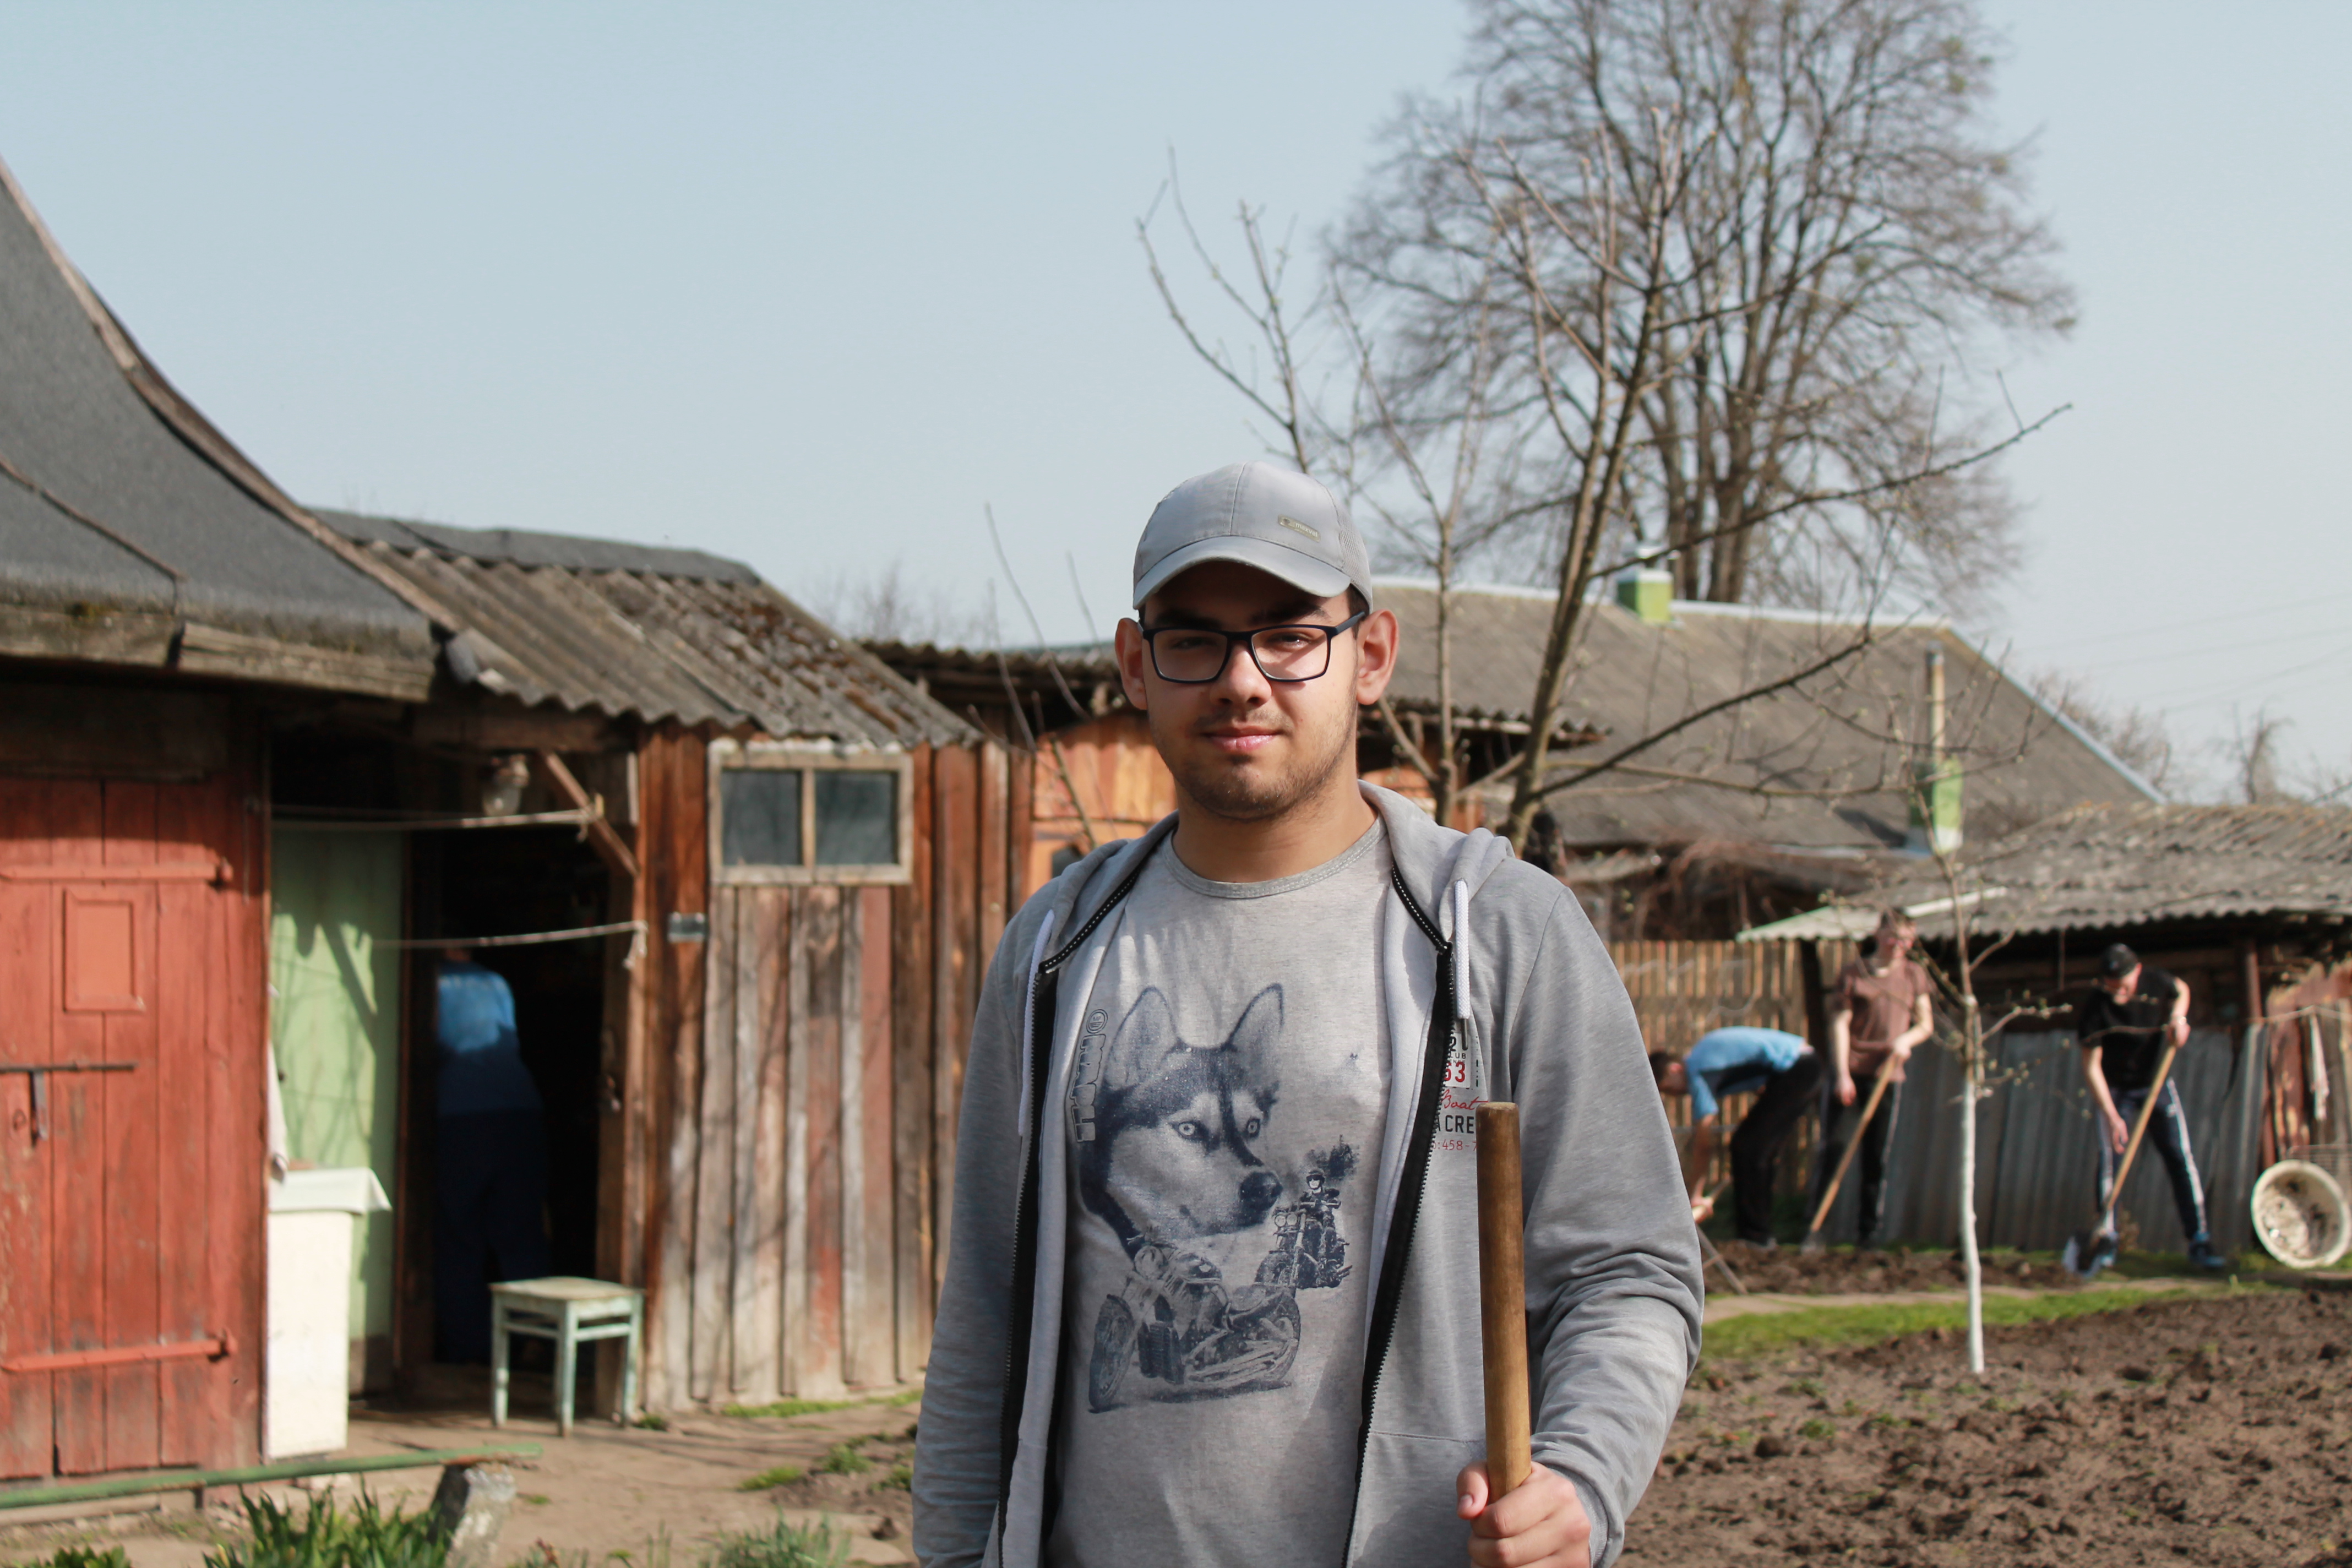 Волонтерский трудовой десант аграрного технологического колледжа прибыл на улицу Володарского